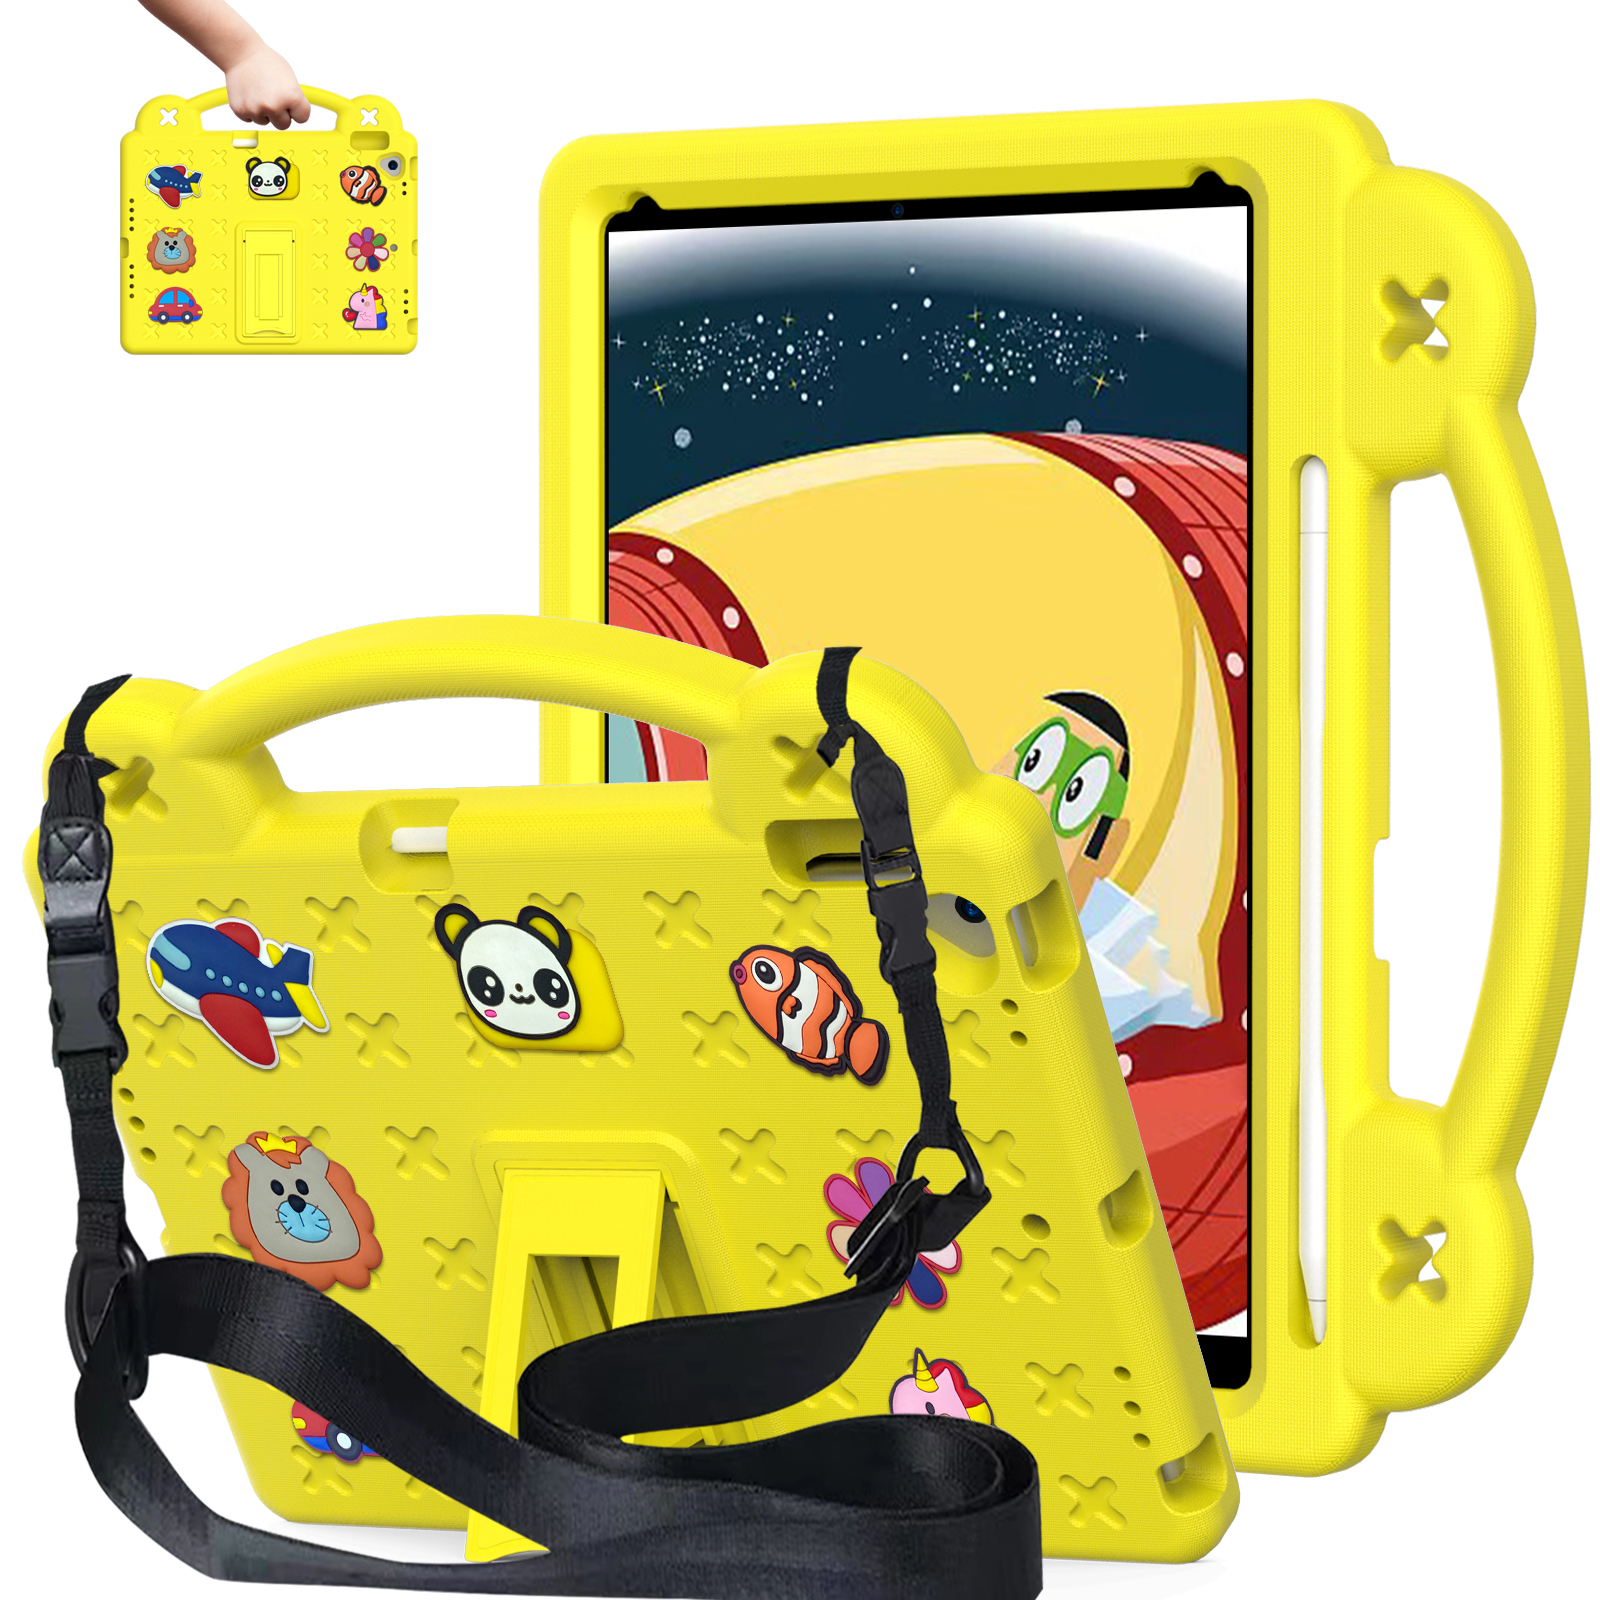 iPad Kids Case Eva Drop-Proof schokbestendig met standaardhandgreep Schouderband Kinderen vriendelijke beschermende tabletafdekking Mouwen voor Mini 123456 Air 10.2 10.5 Pro 11 inch